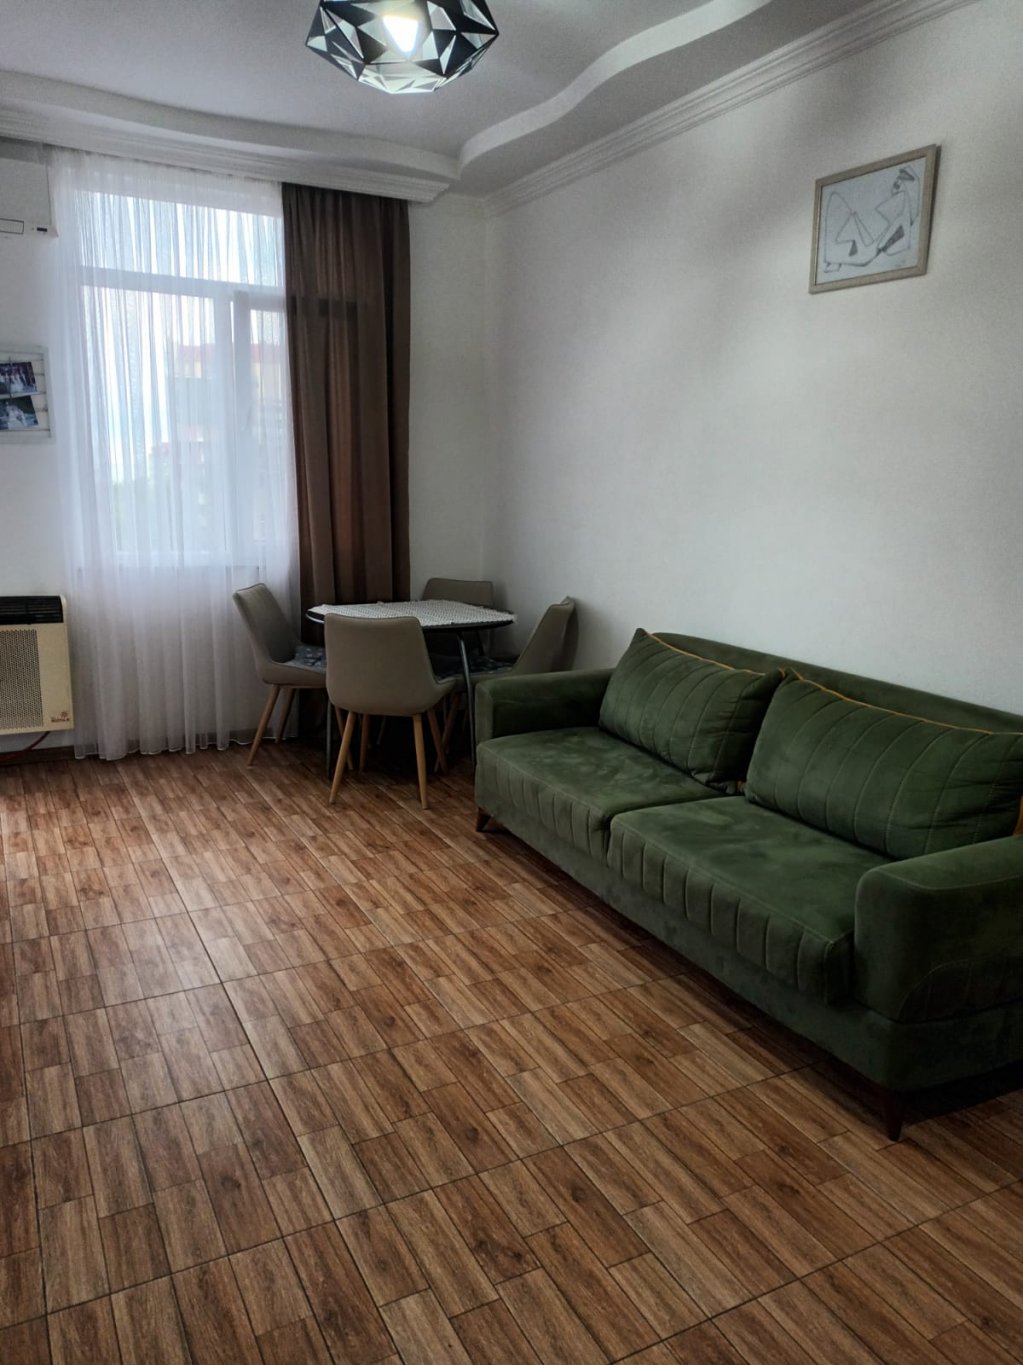 2-комнатная квартира на ул. В.Горгасали id-642 - аренда апартаментов в Батуми